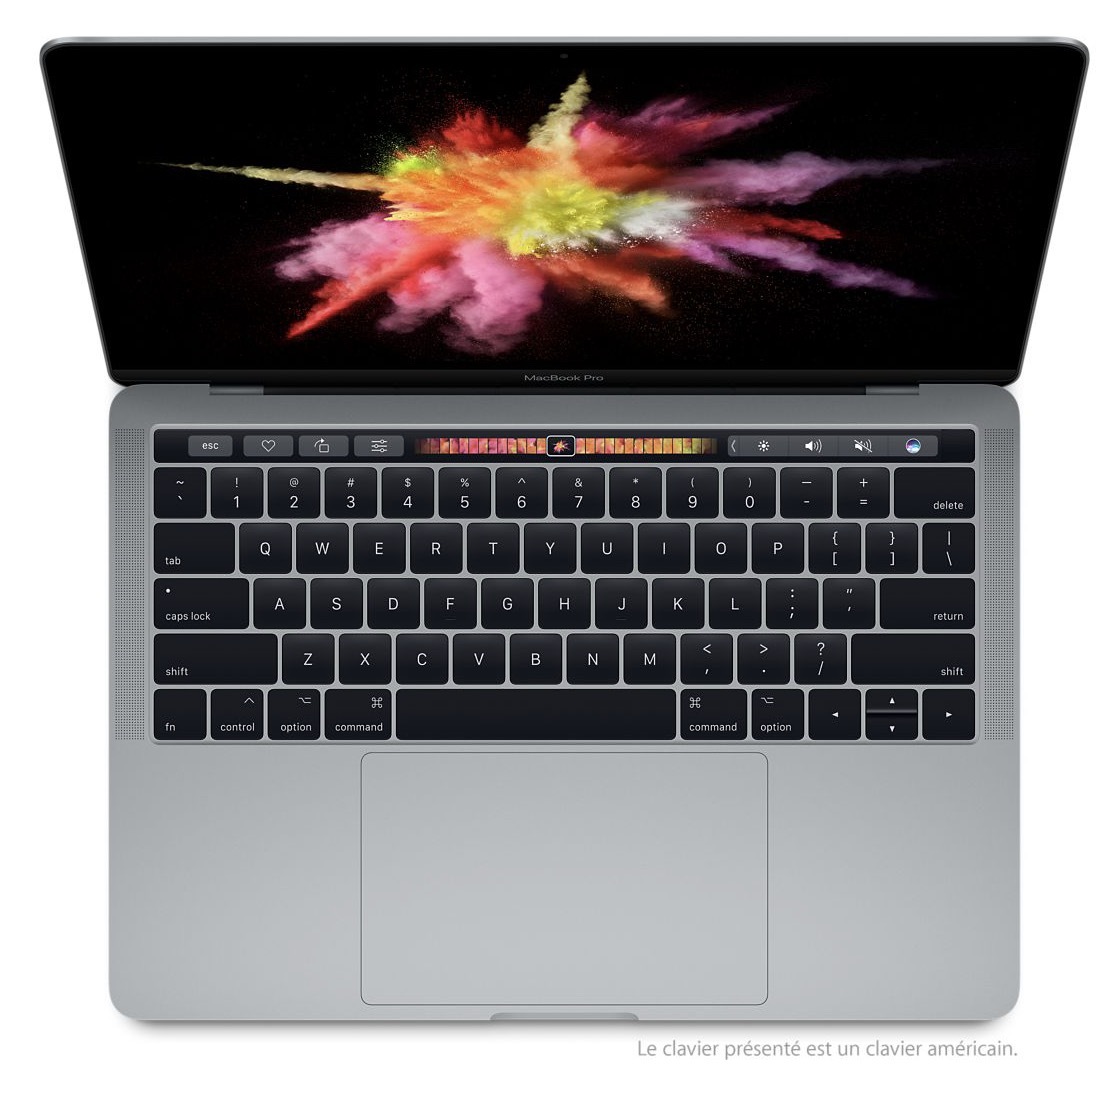 Refurb : des Mac mini à 459€, toujours des MacBook Pro 2017 et de nombreux iPad